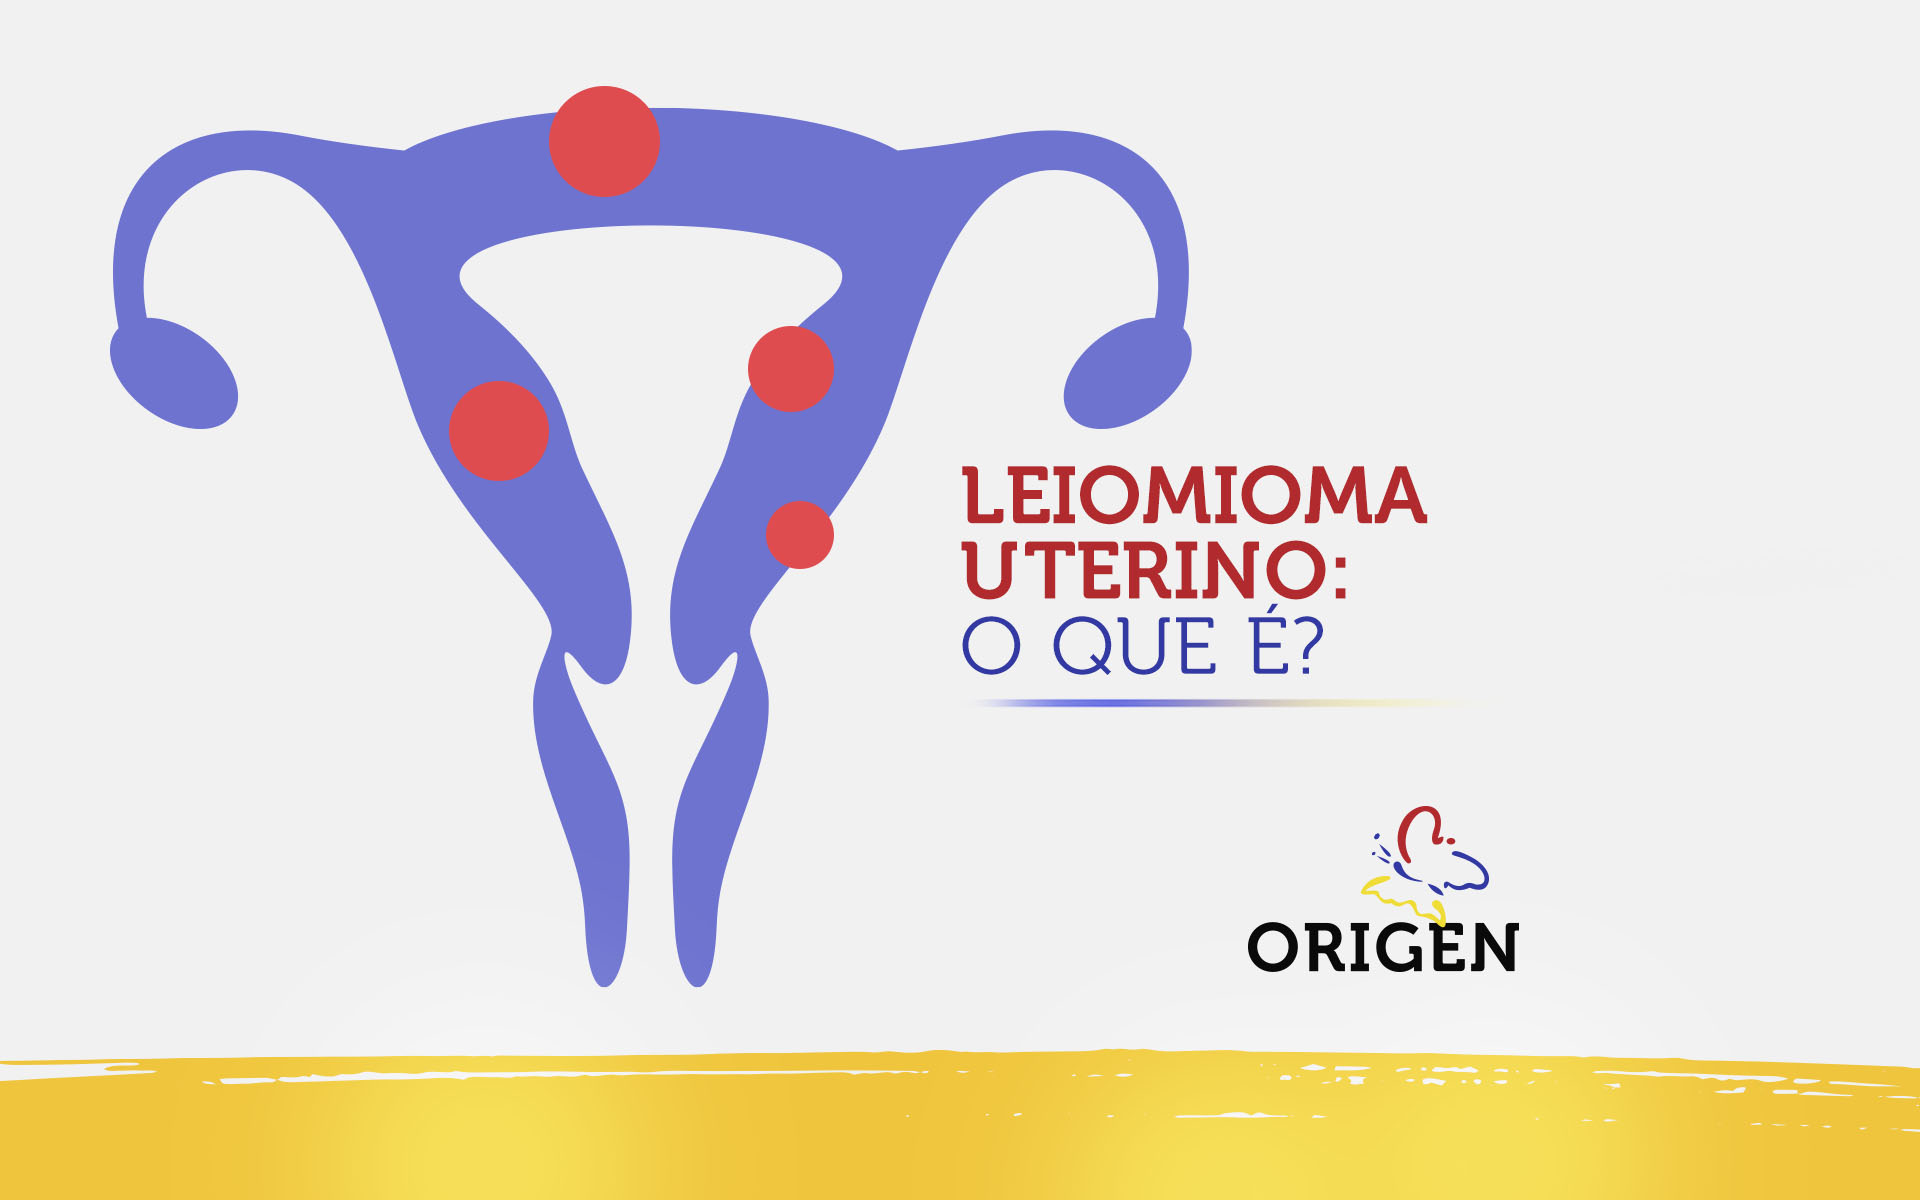 Leiomioma uterino: o que é?